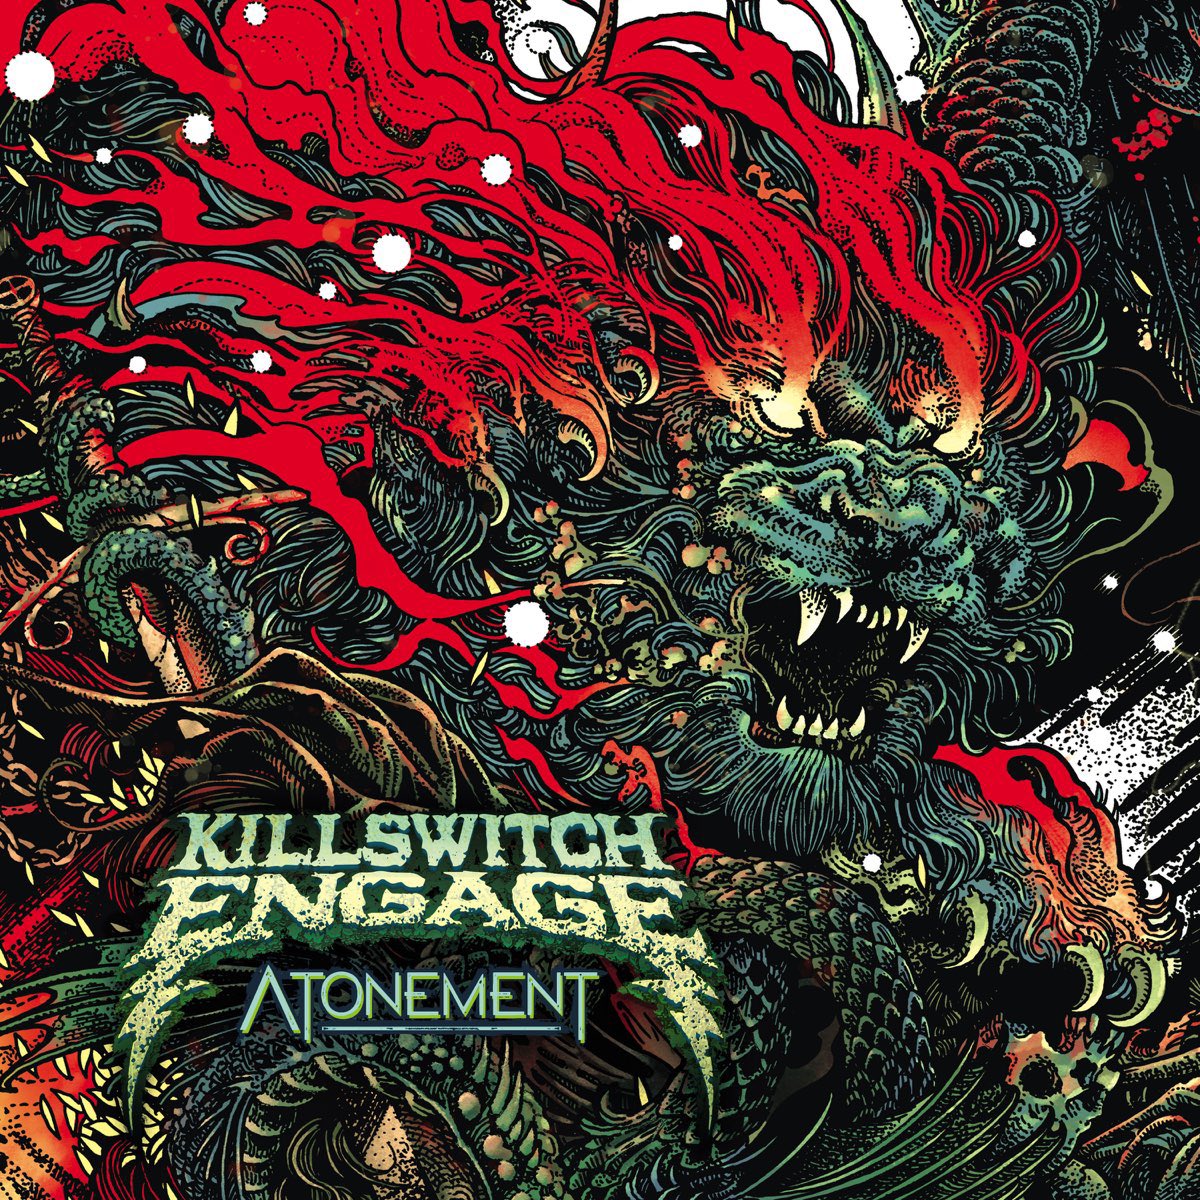 🔥Now🔥Playing🔥

#KillswitchEngage #album #Atonement #metaltwitter 
#metalcore #NowPlaying️ 
#metal #metalhead #music 
#StayHeavy #metalmusic